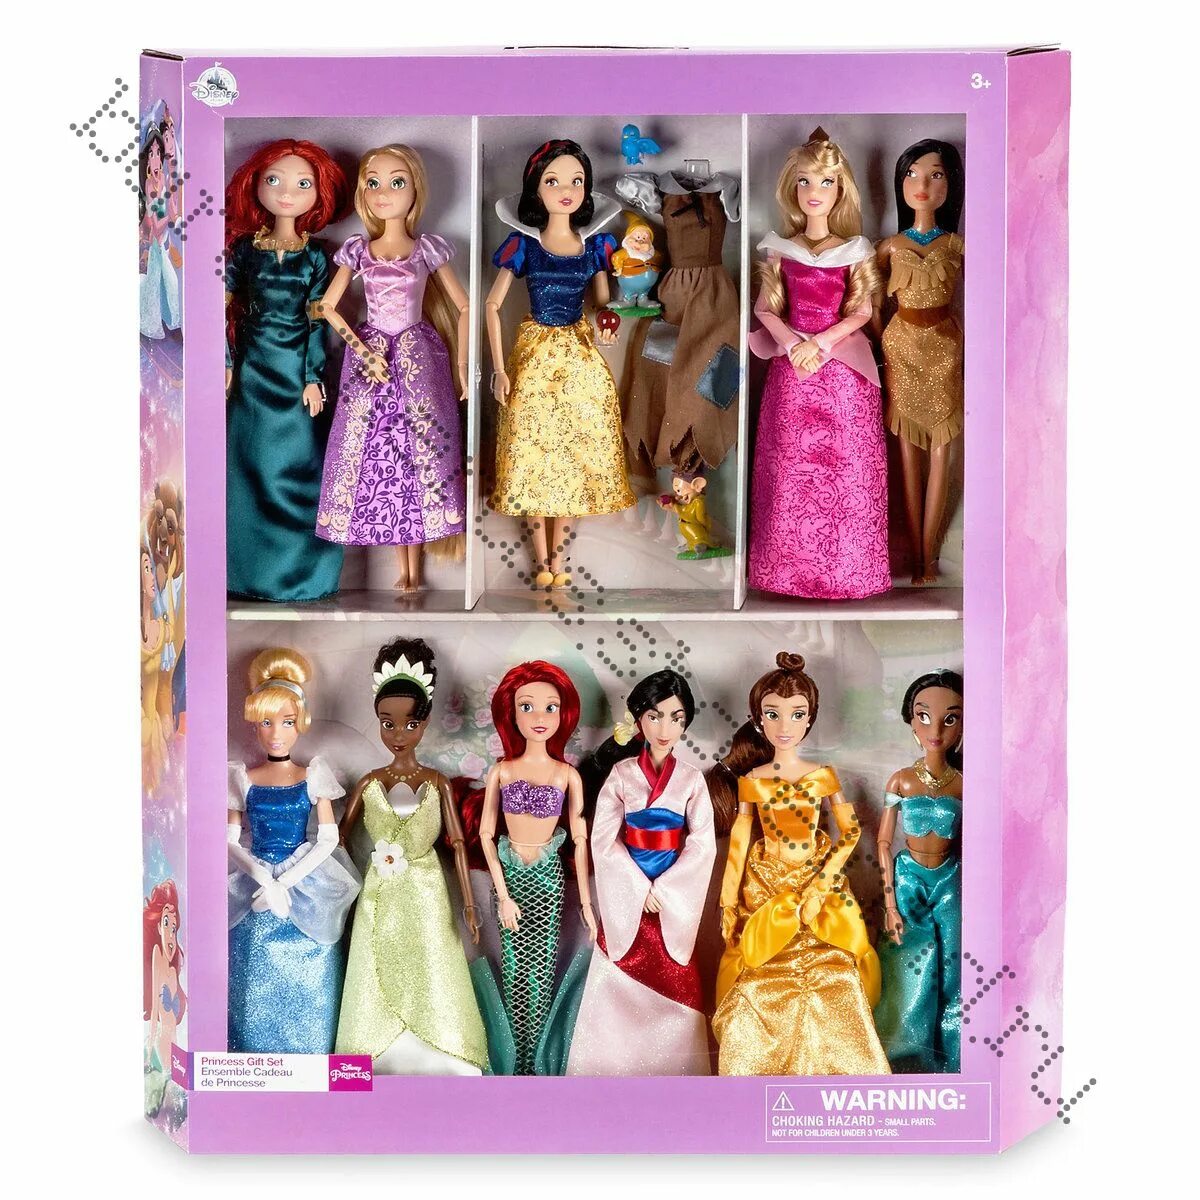 Большой набор кукол. Дисней стор куклы принцессы. Куклы принцессы Диснея Бель. Кукла Дисней стор набор. Набор кукол Дисней 5622.